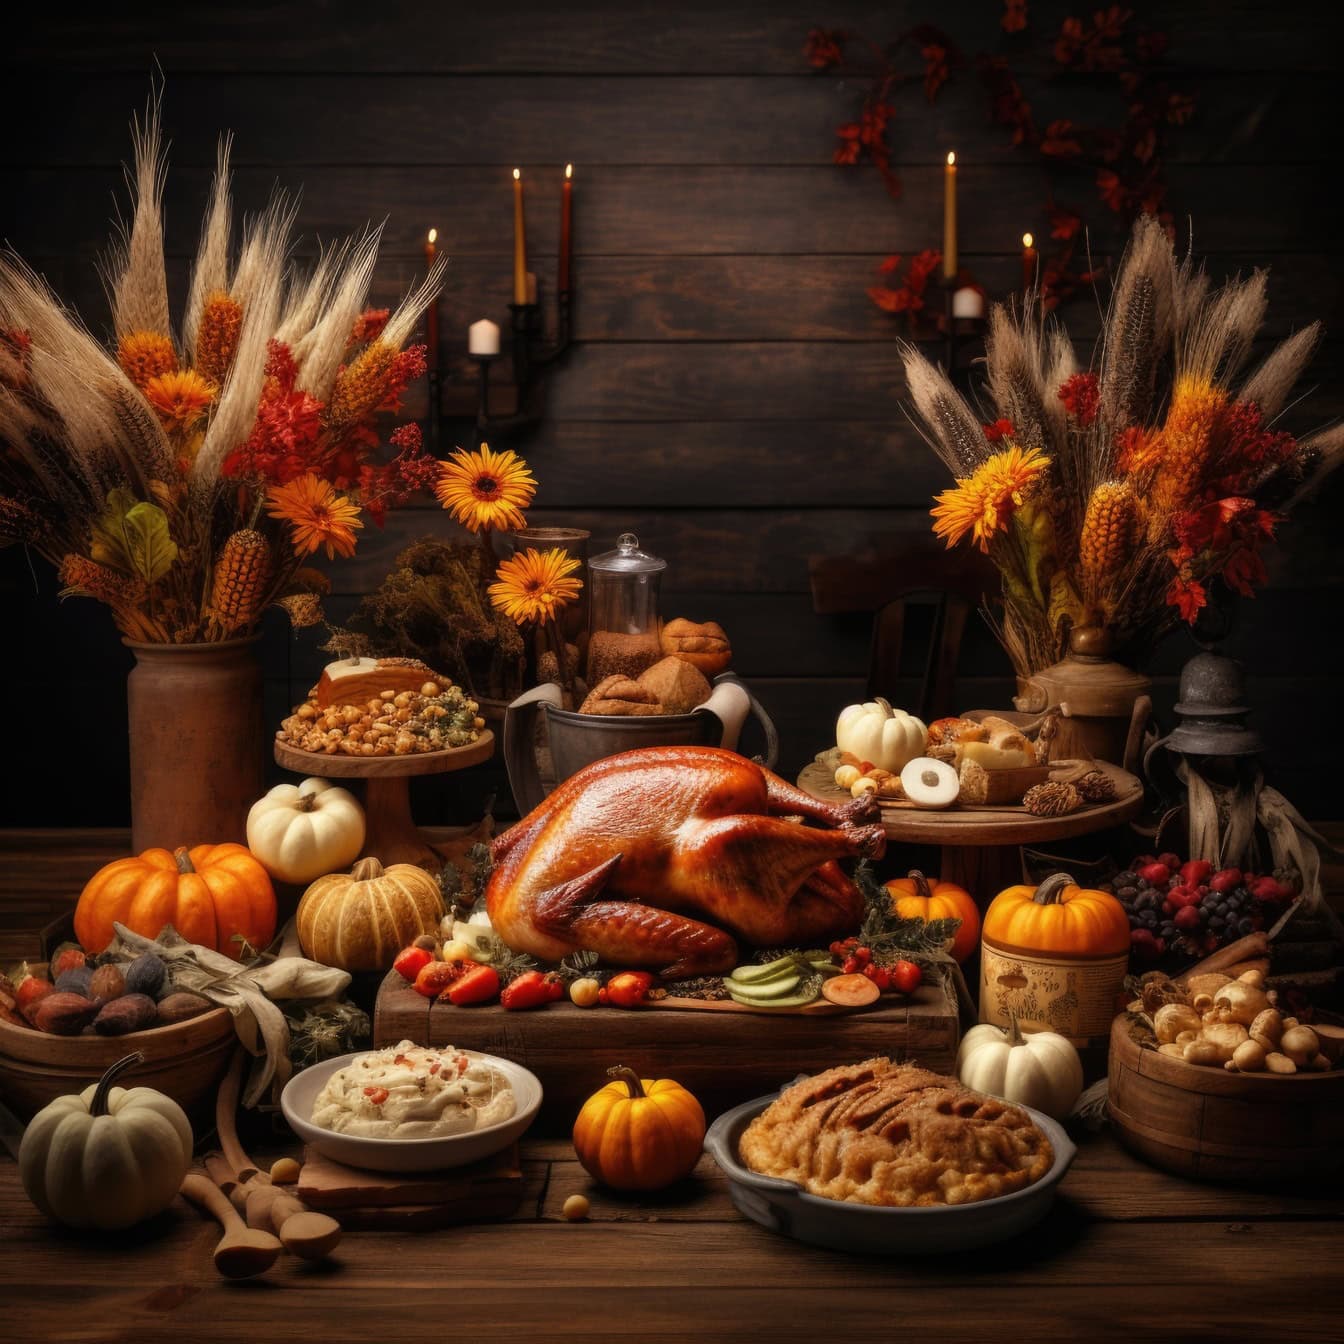 Ristet kalkun på et bord med anden thanksgiving-mad og blomster, en illustration af thanksgiving-middag